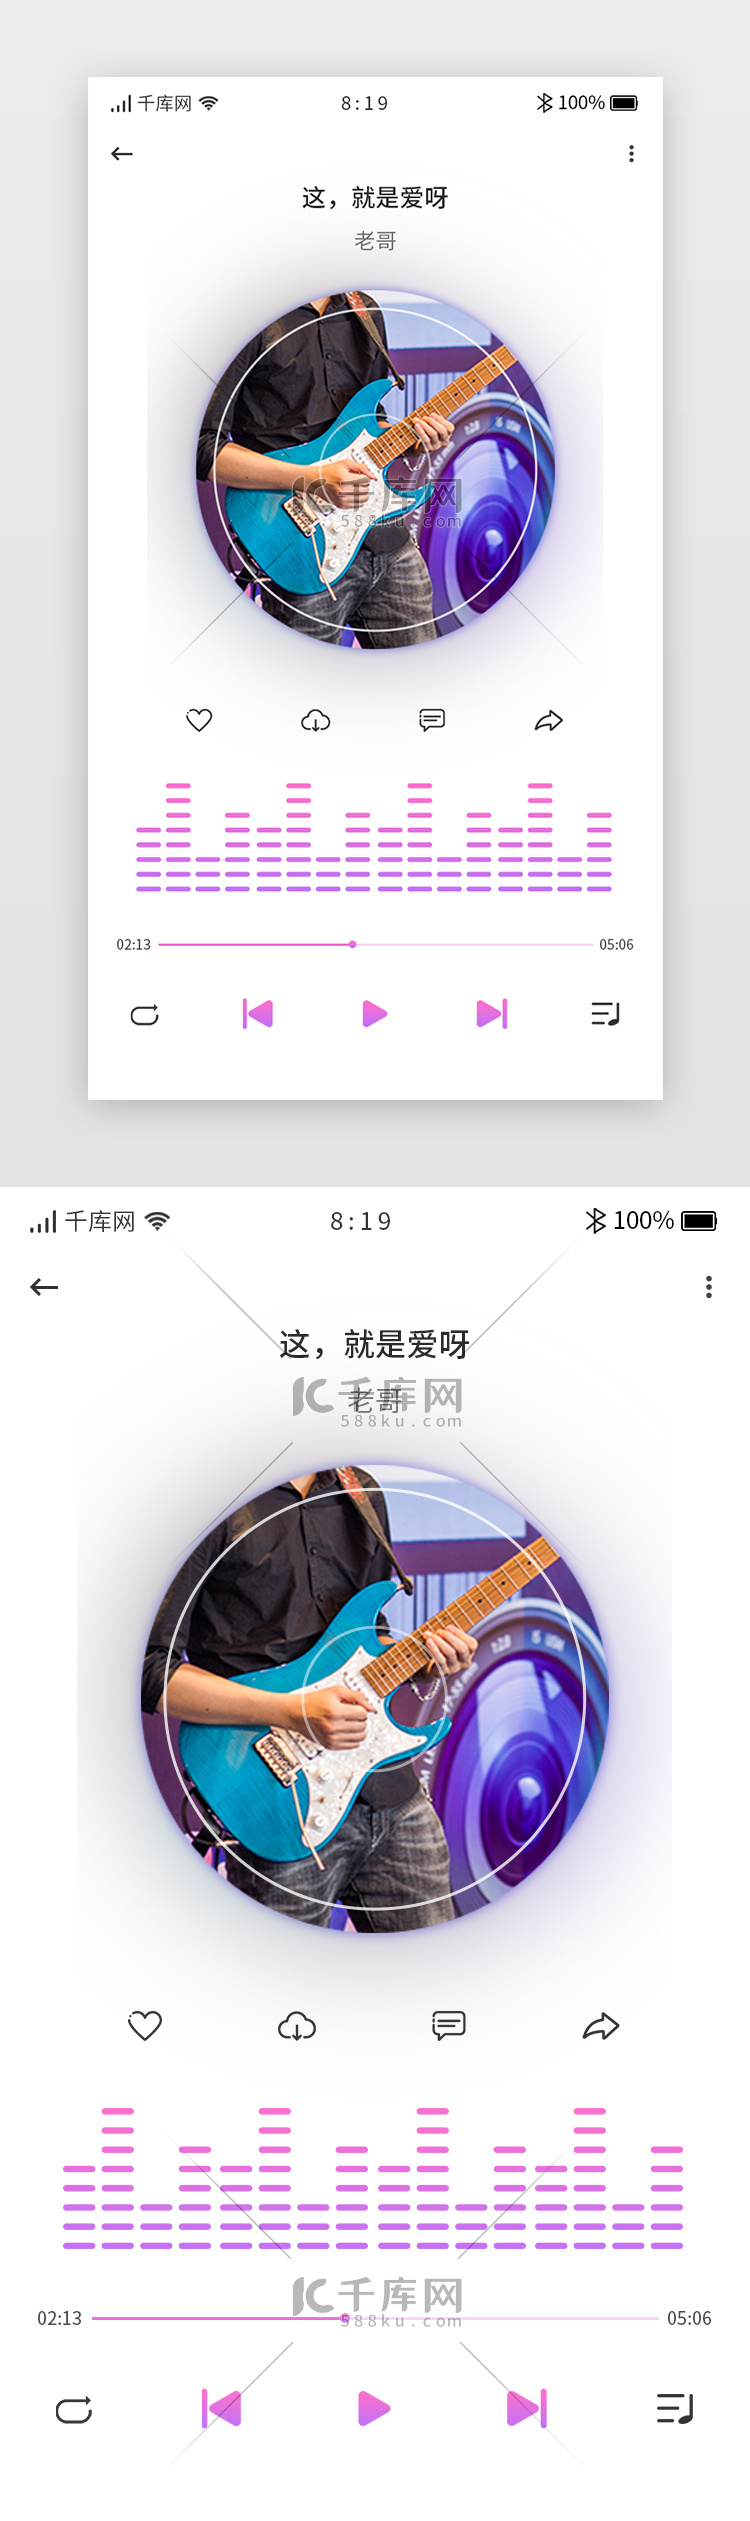 紫色炫酷渐变卡片音乐app歌曲播放详情页